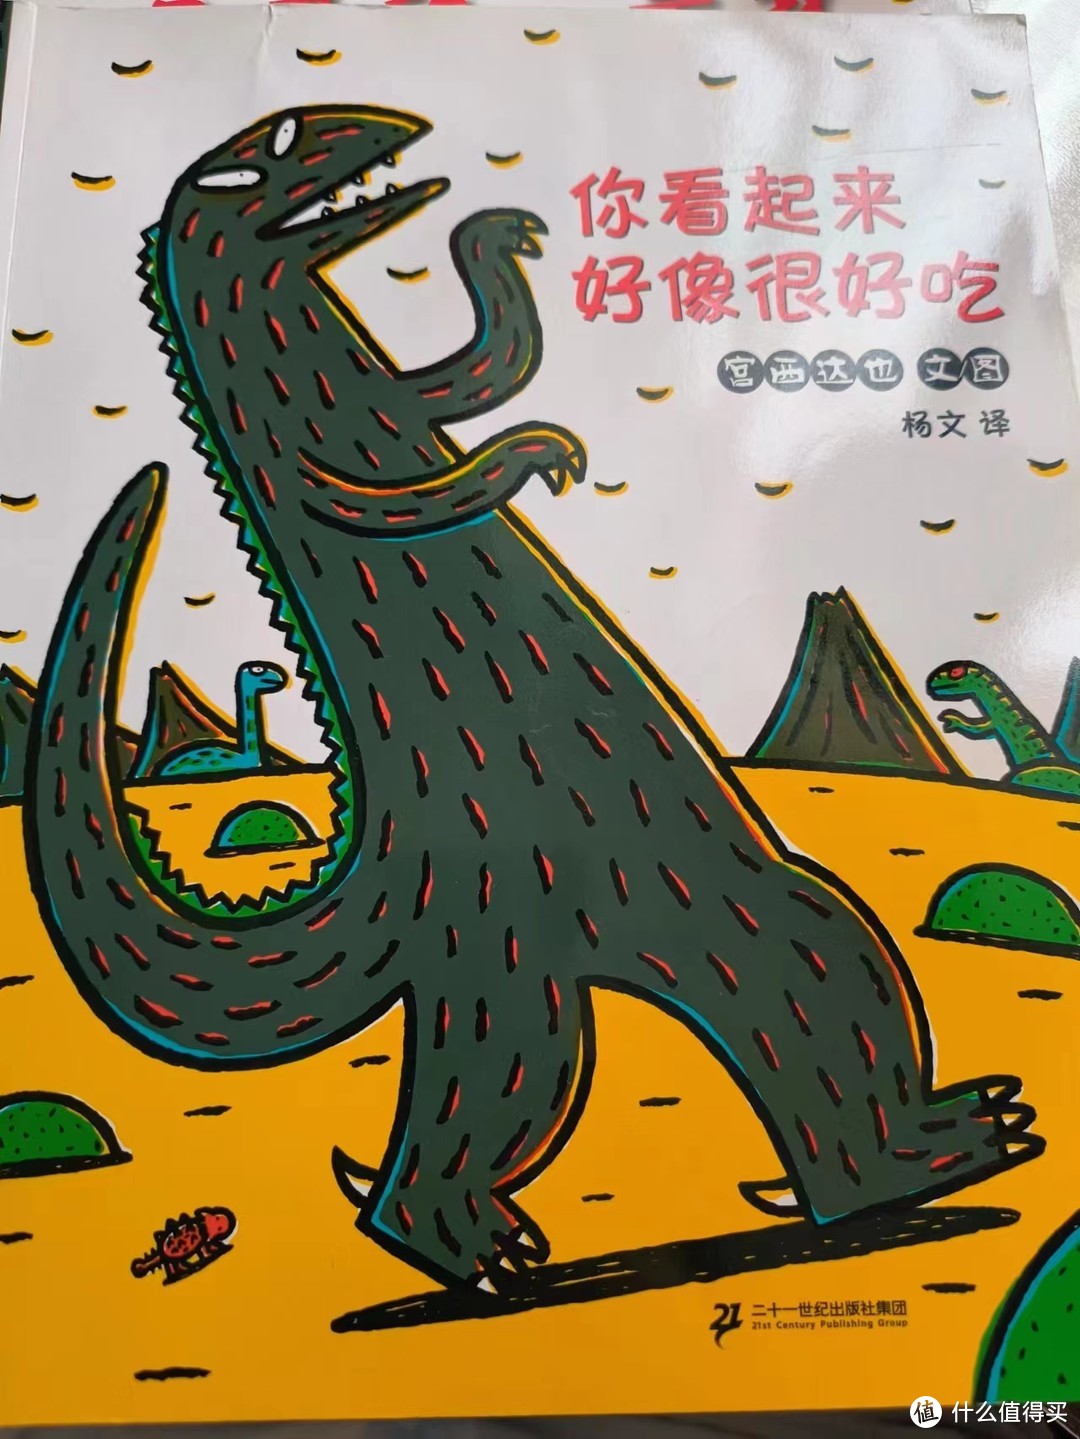 宫西达也恐龙系列绘本让孩子懂得爱与被爱